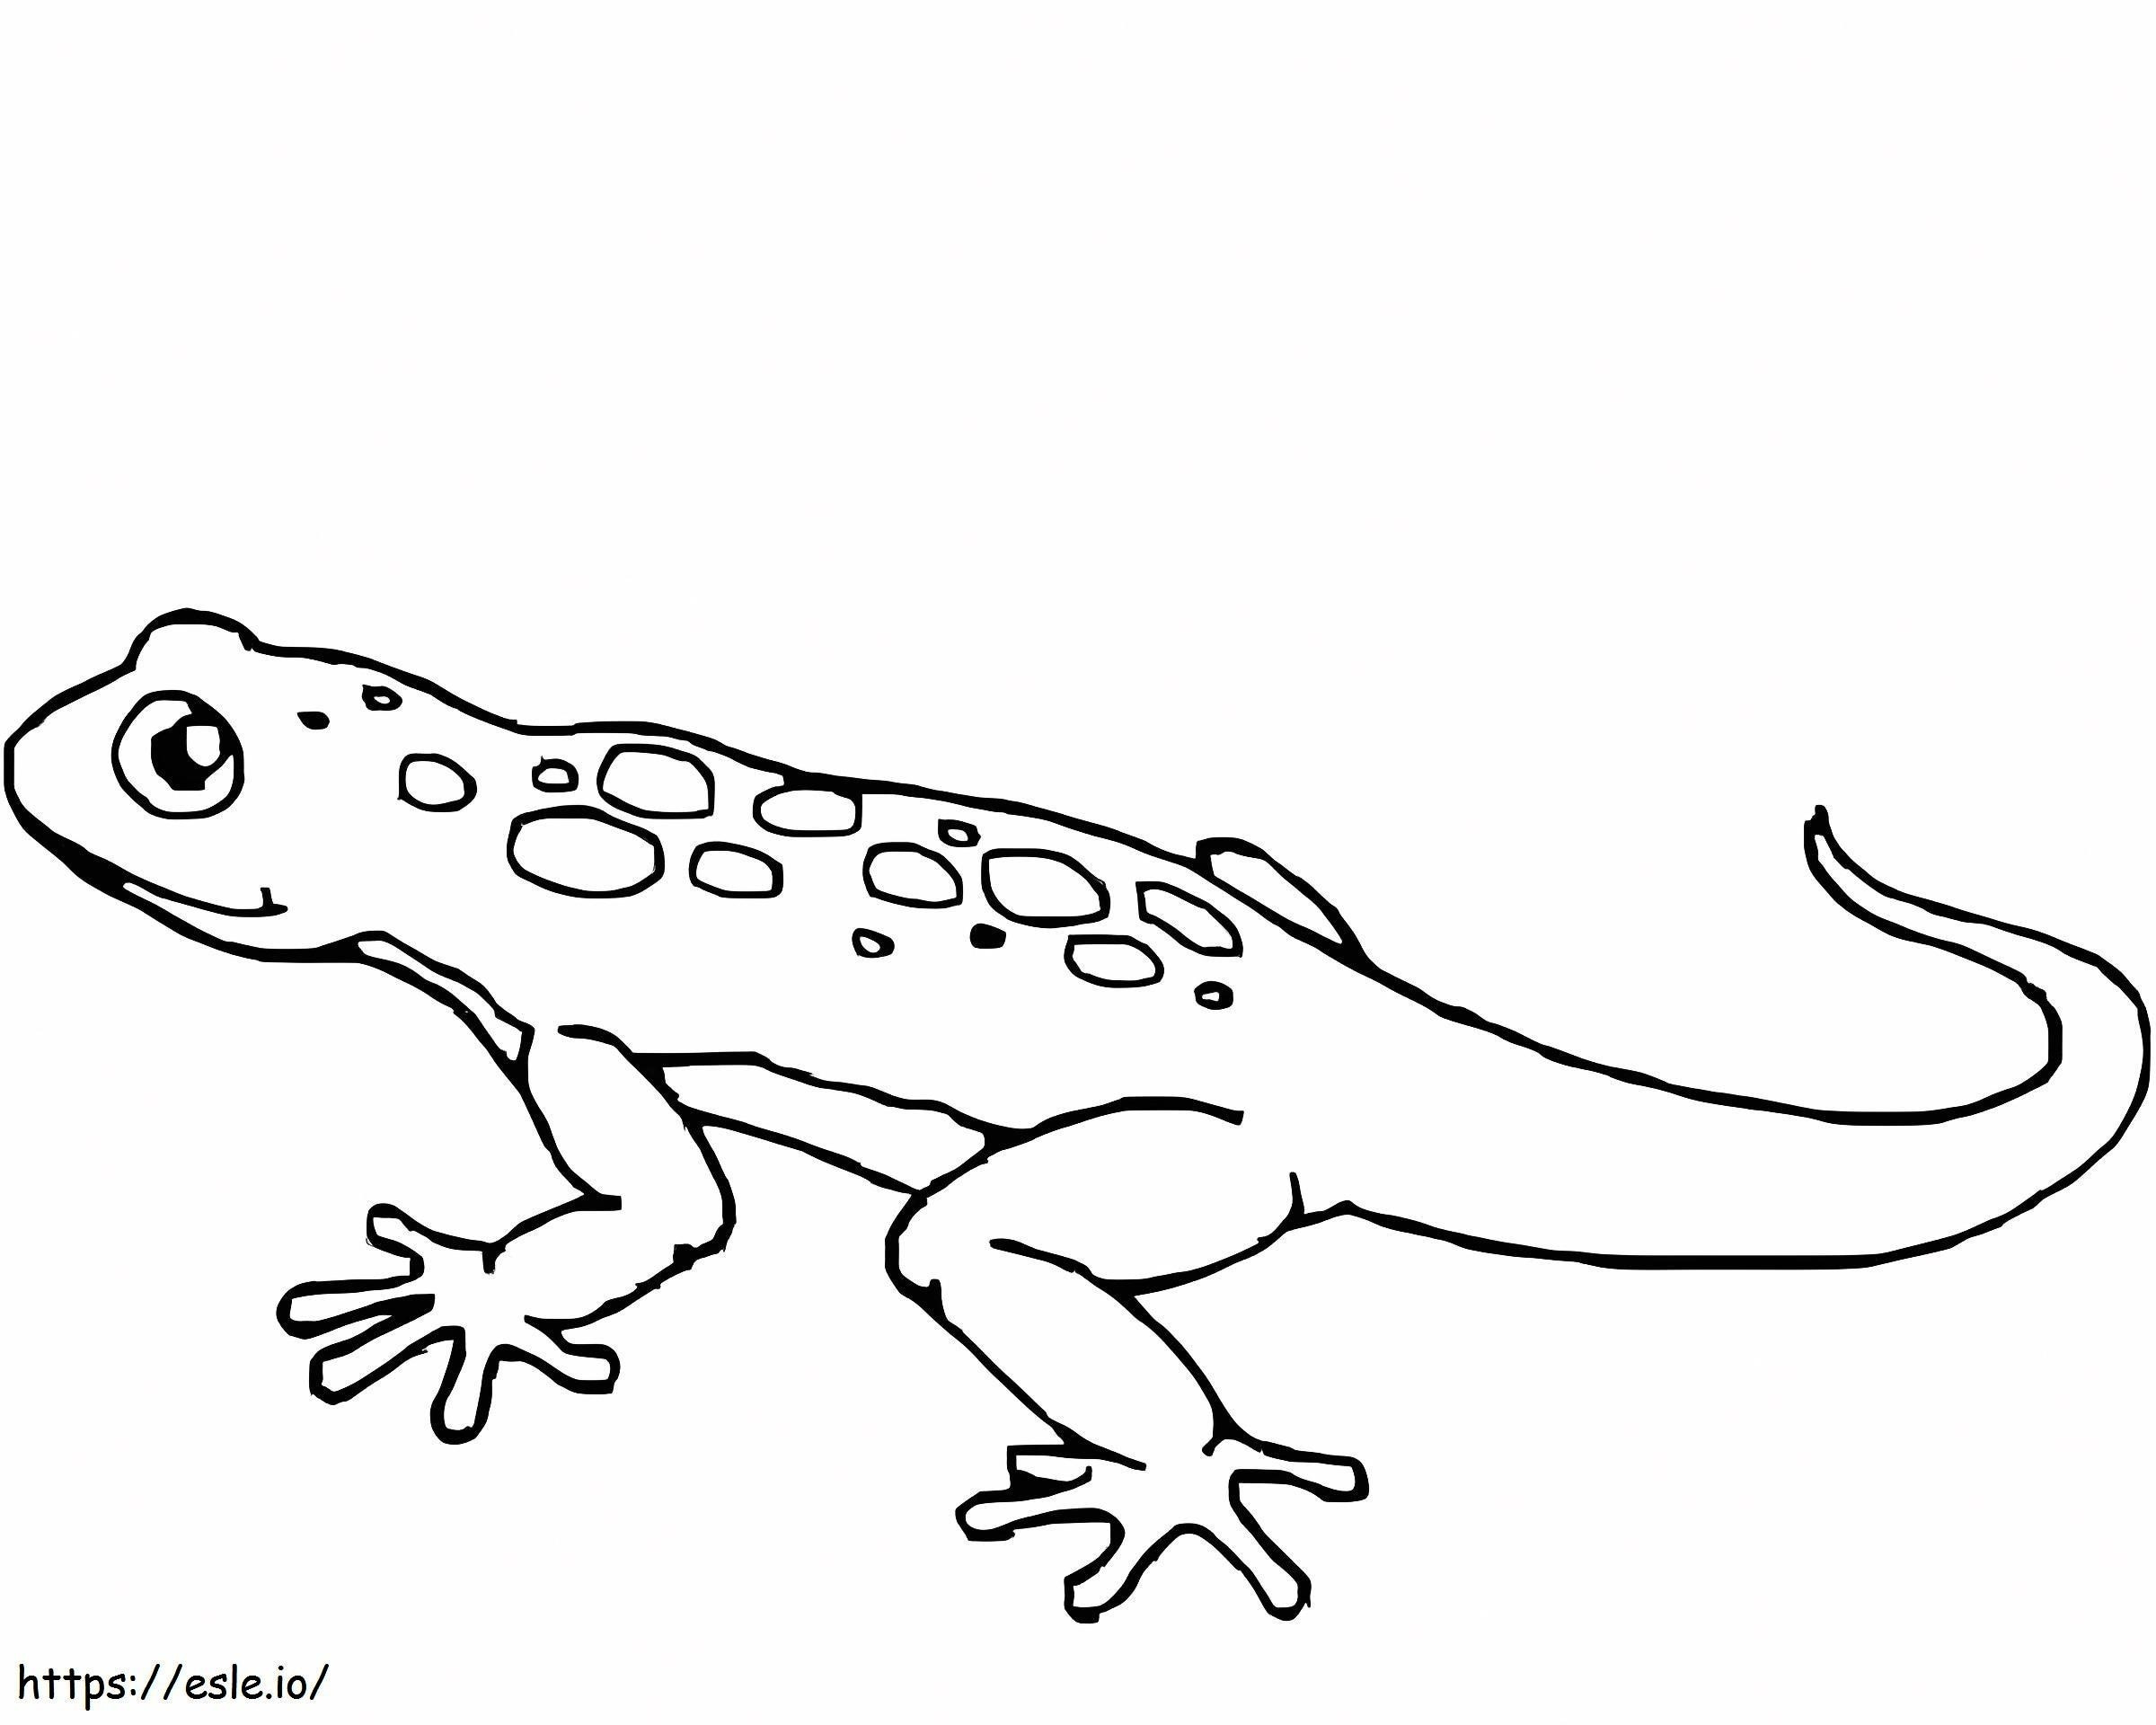 Coloriage Gecko incroyable à imprimer dessin